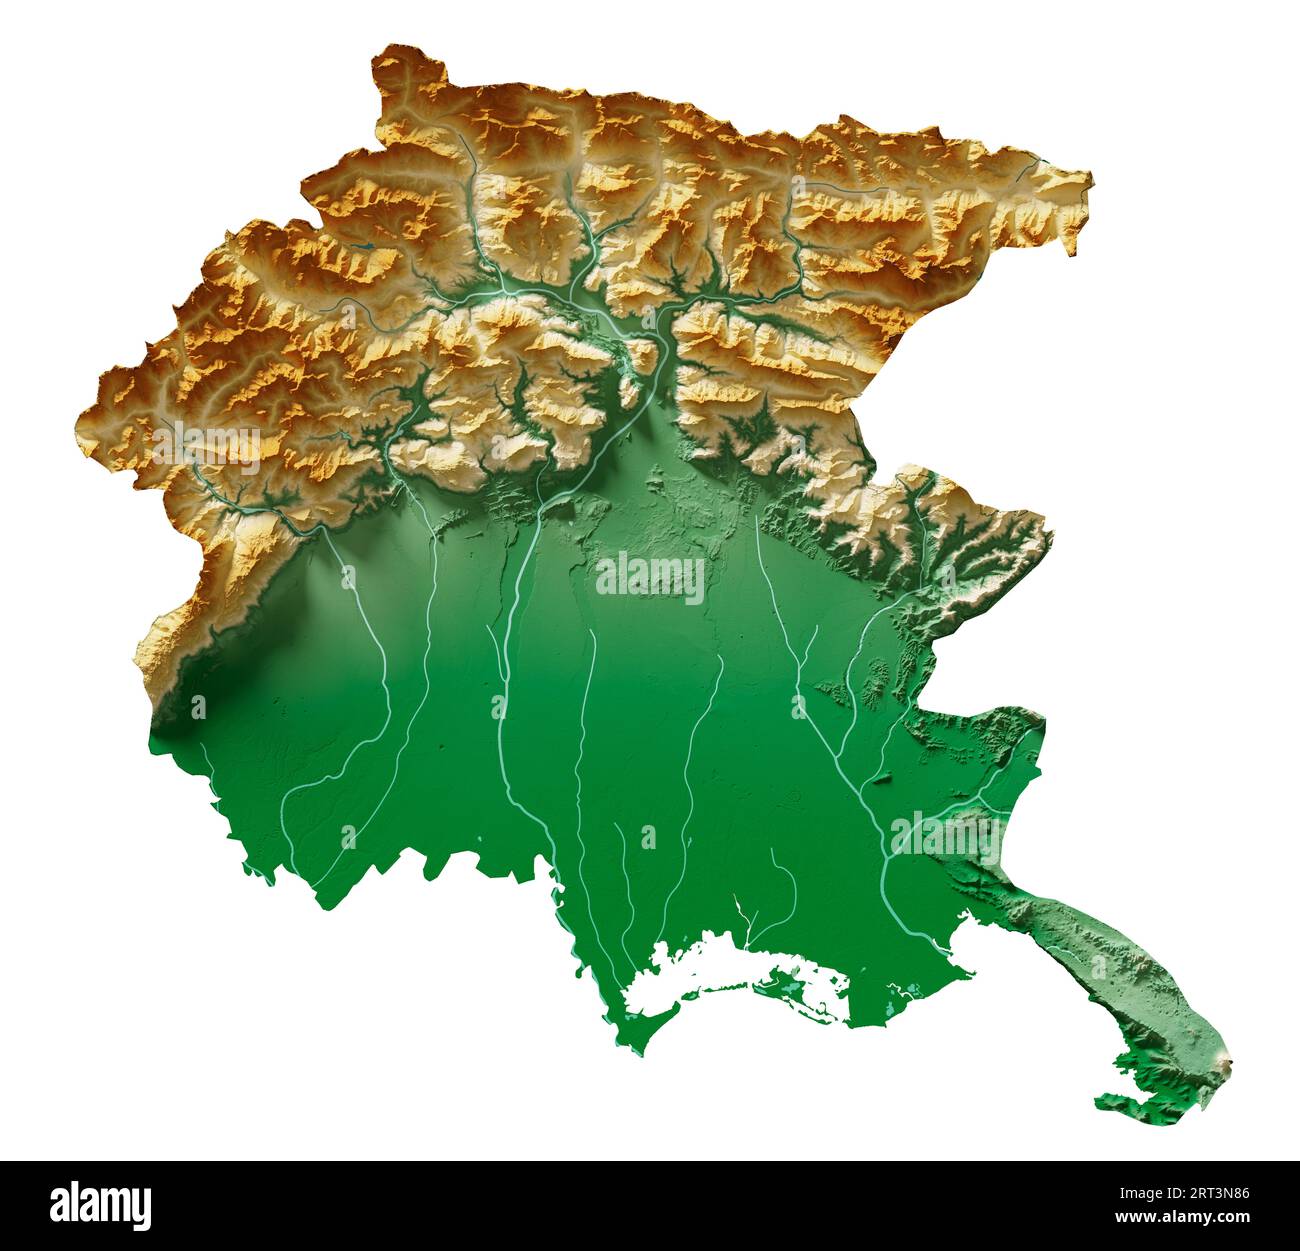 Friaul-Venezia Giulia. Eine Region Italiens. Detailliertes 3D-Rendering einer schattierten Reliefkarte, Flüsse, Seen. Farbig nach Höhe. Reiner weißer Hintergrund. Stockfoto